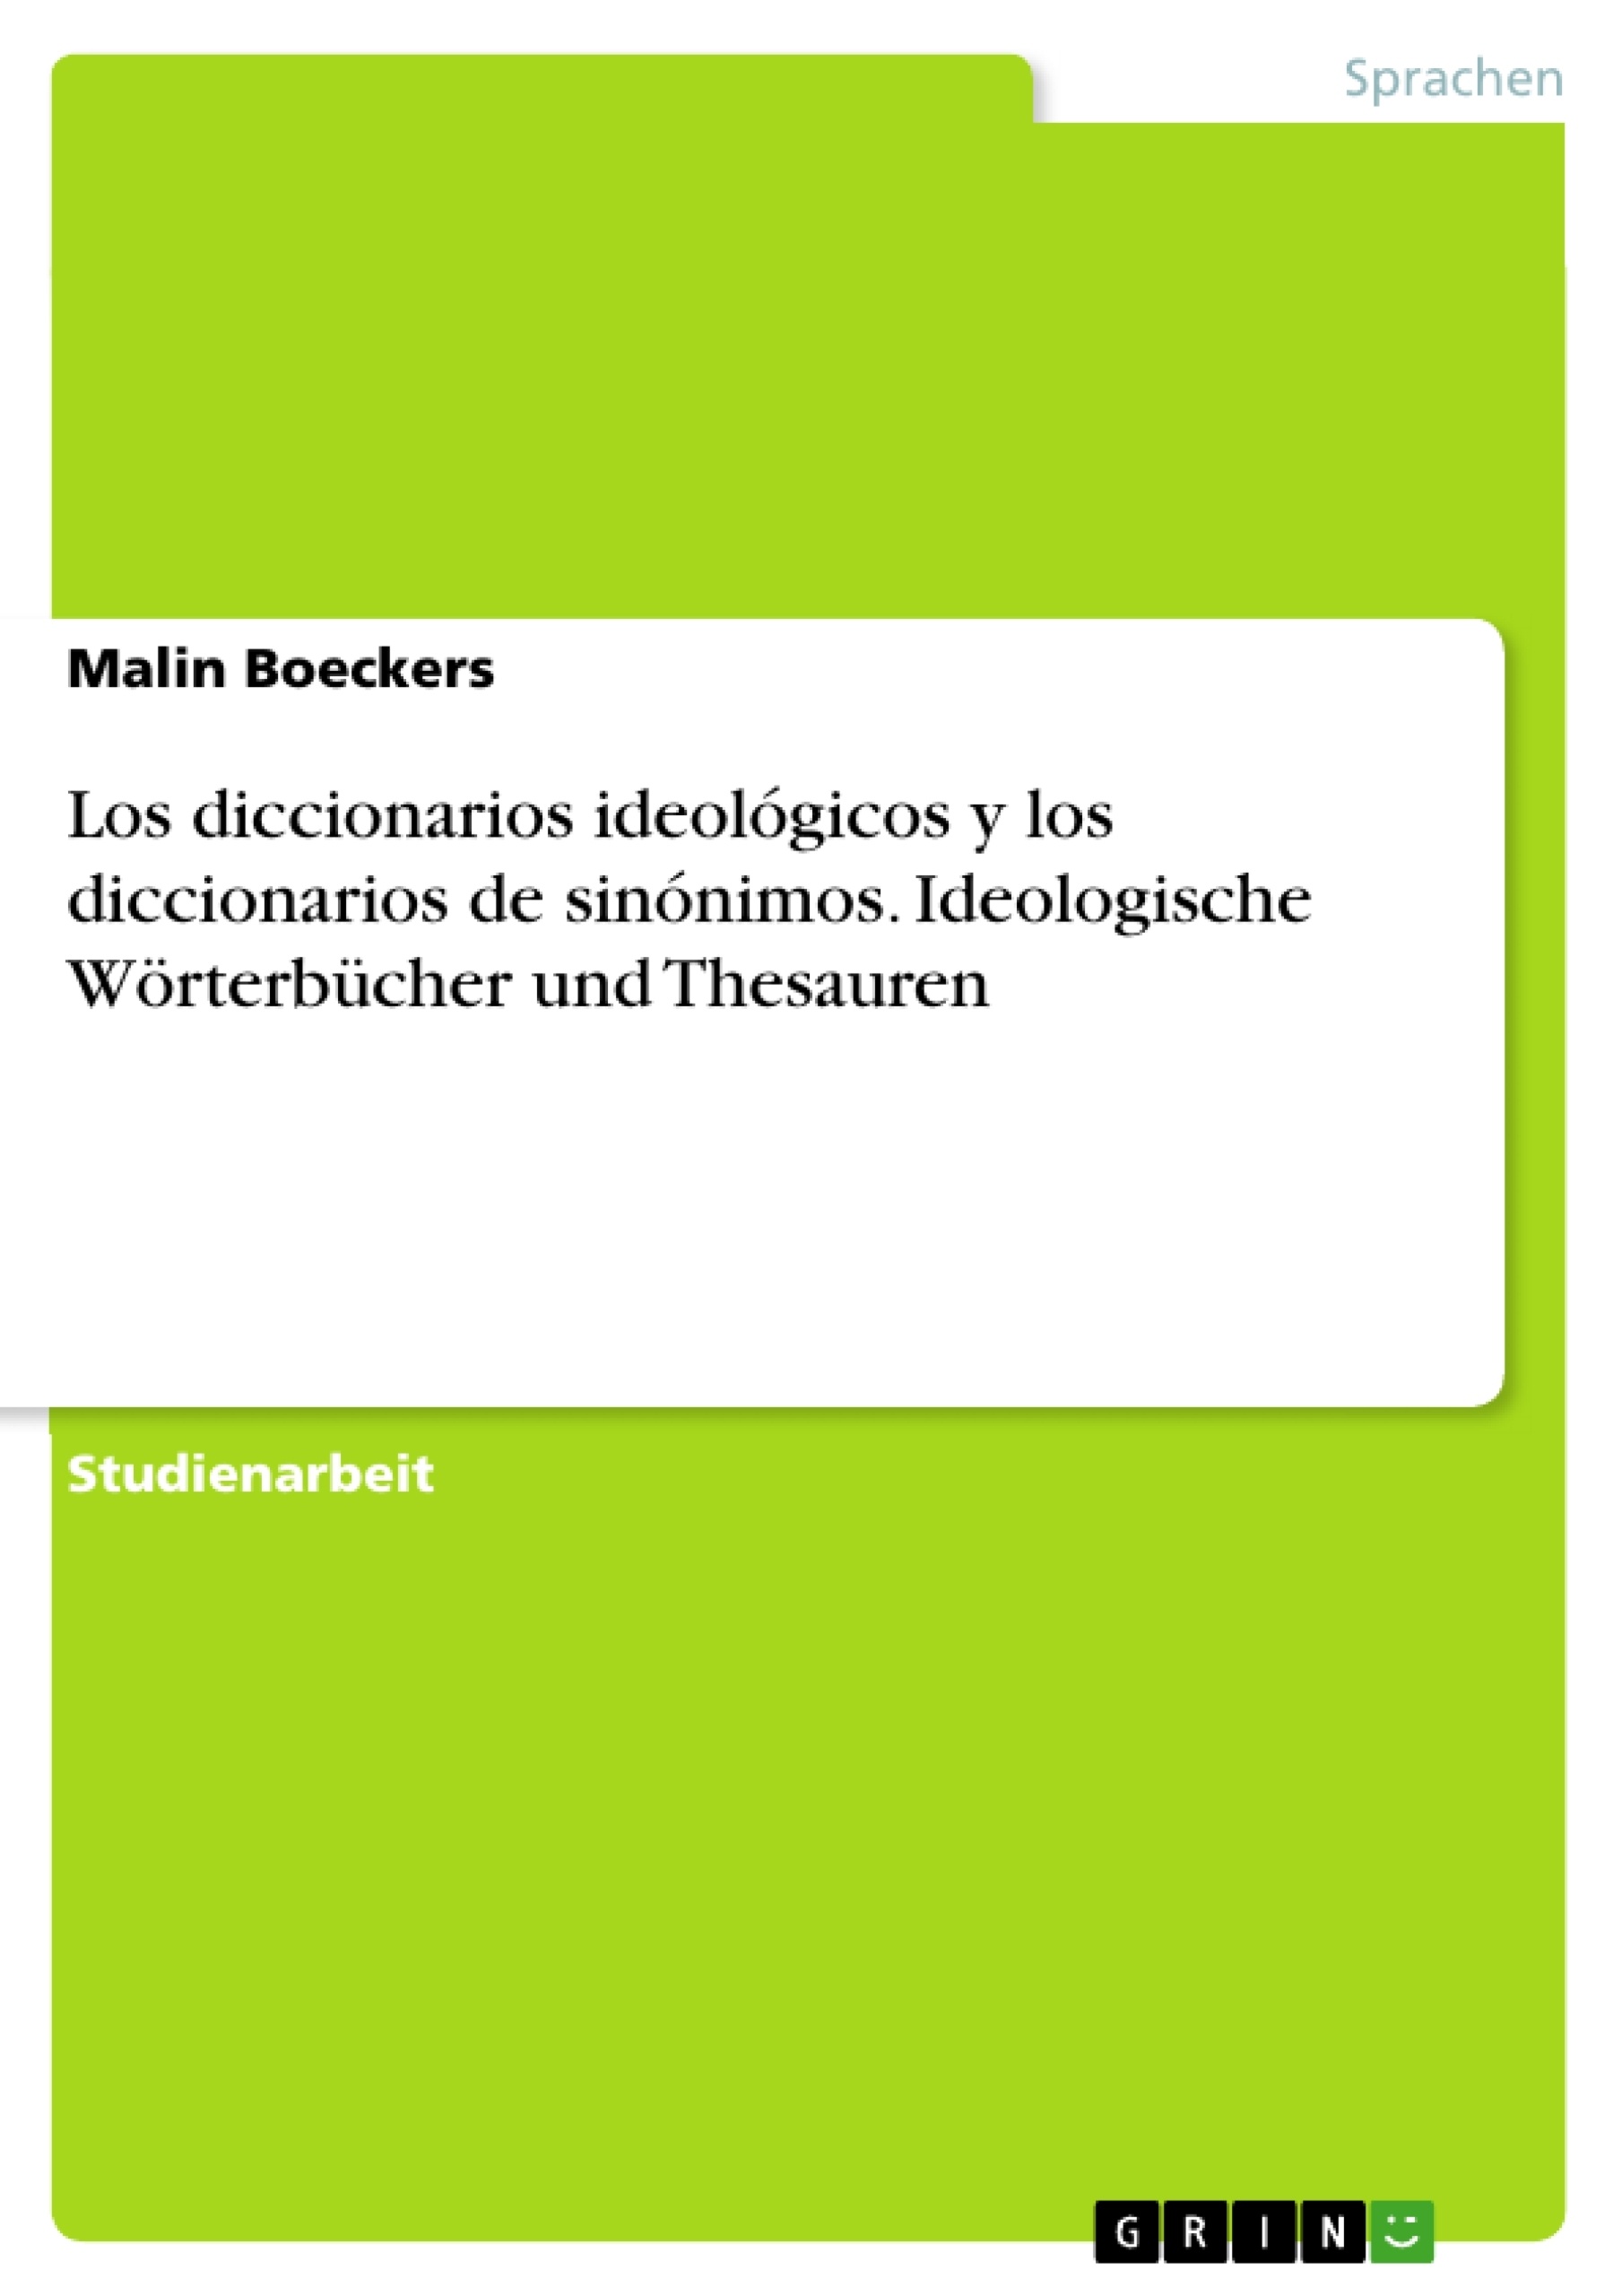 Título: Los diccionarios ideológicos y los diccionarios de sinónimos. Ideologische Wörterbücher und Thesauren